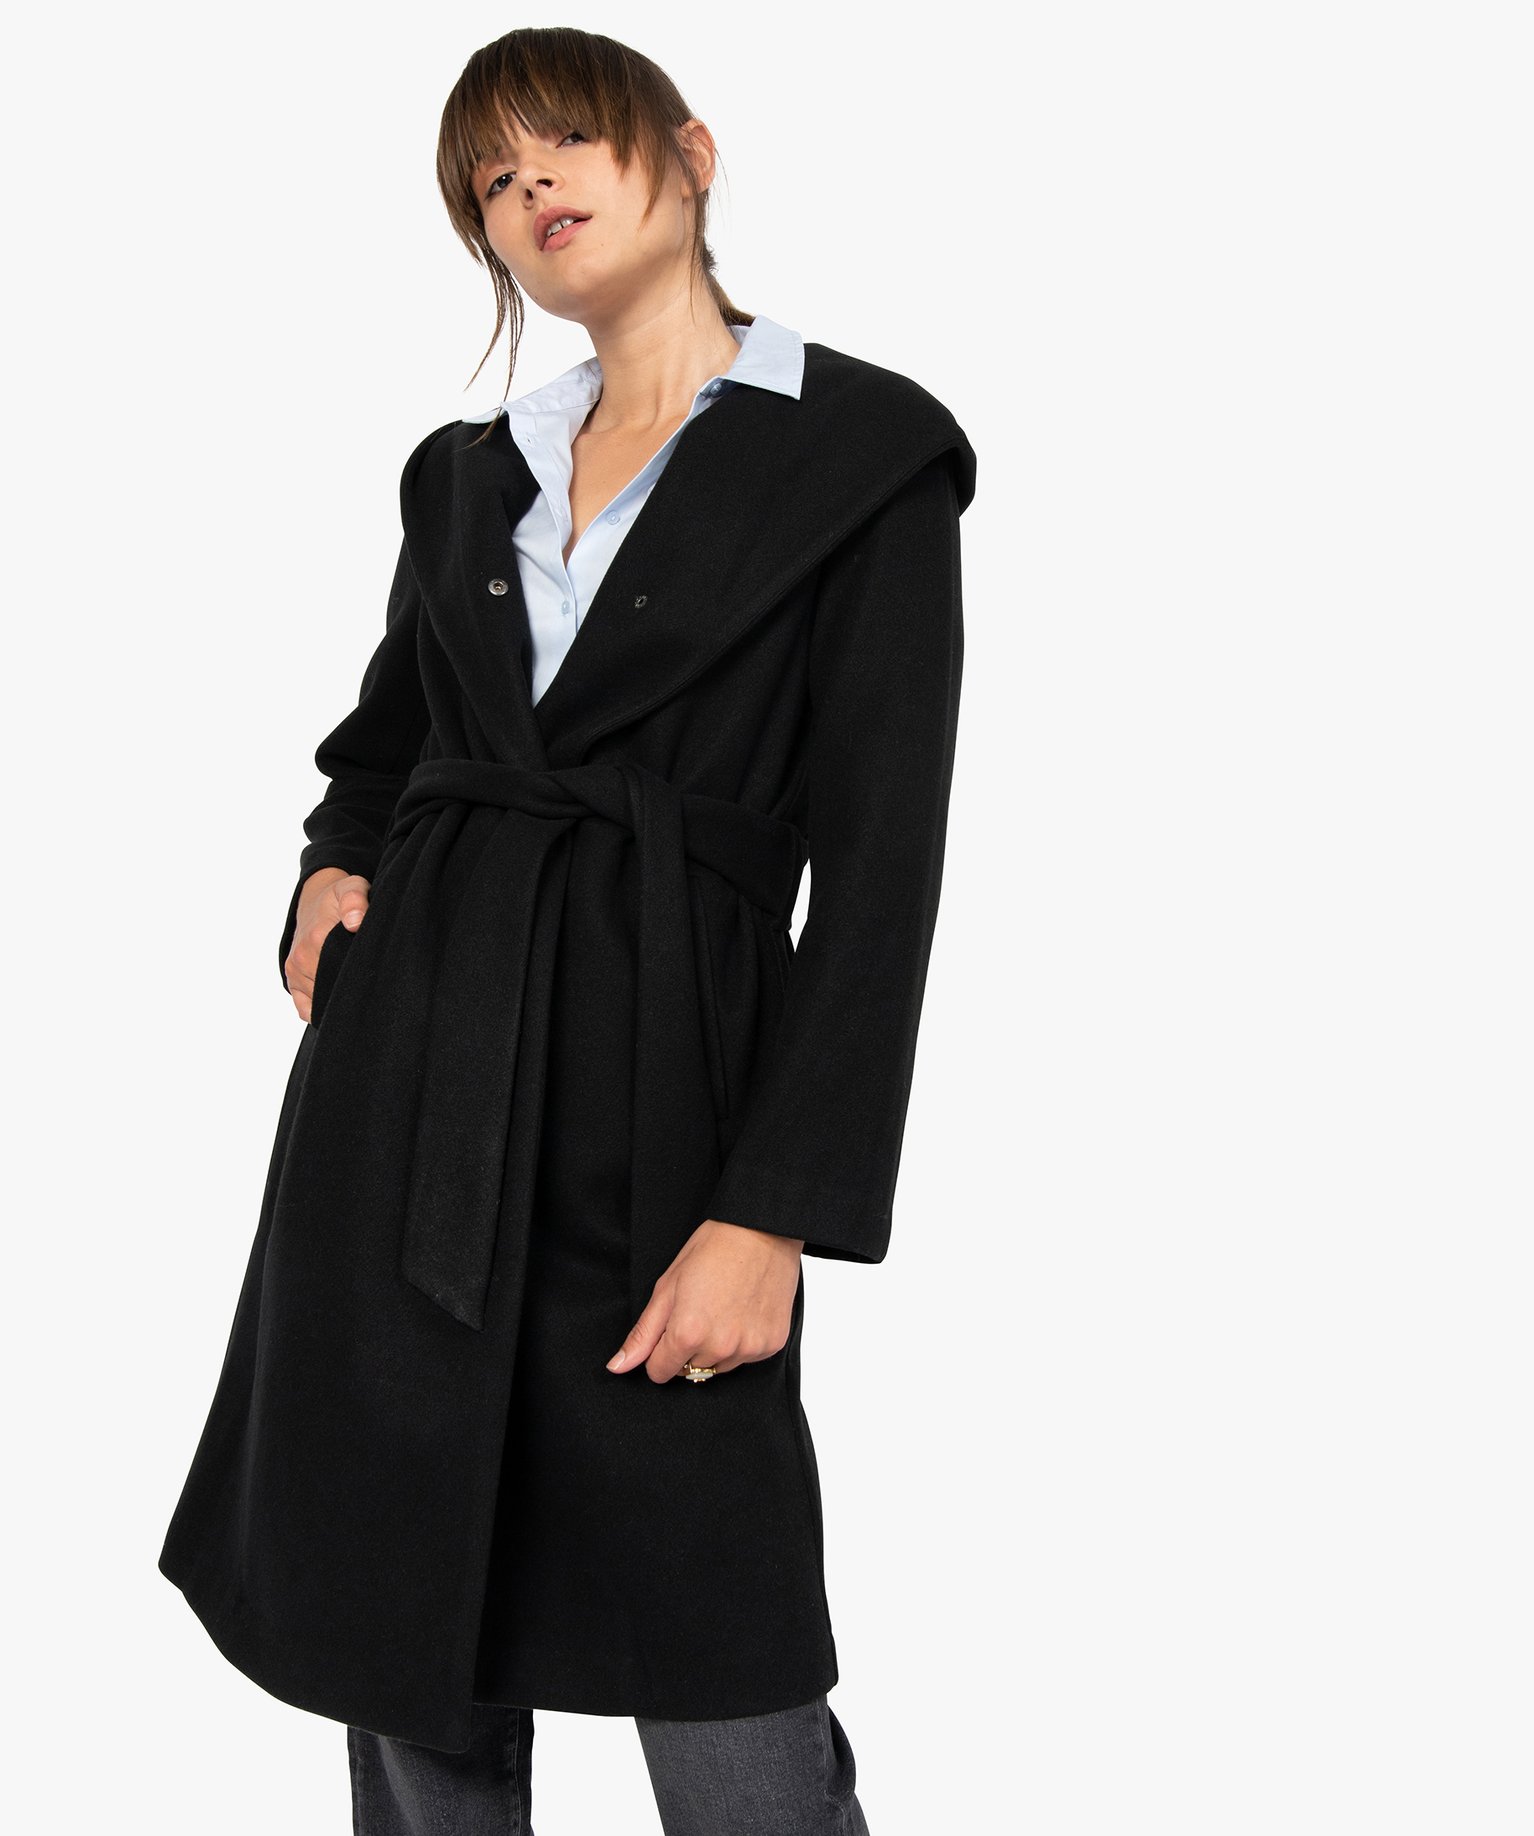 manteau col capuche femme